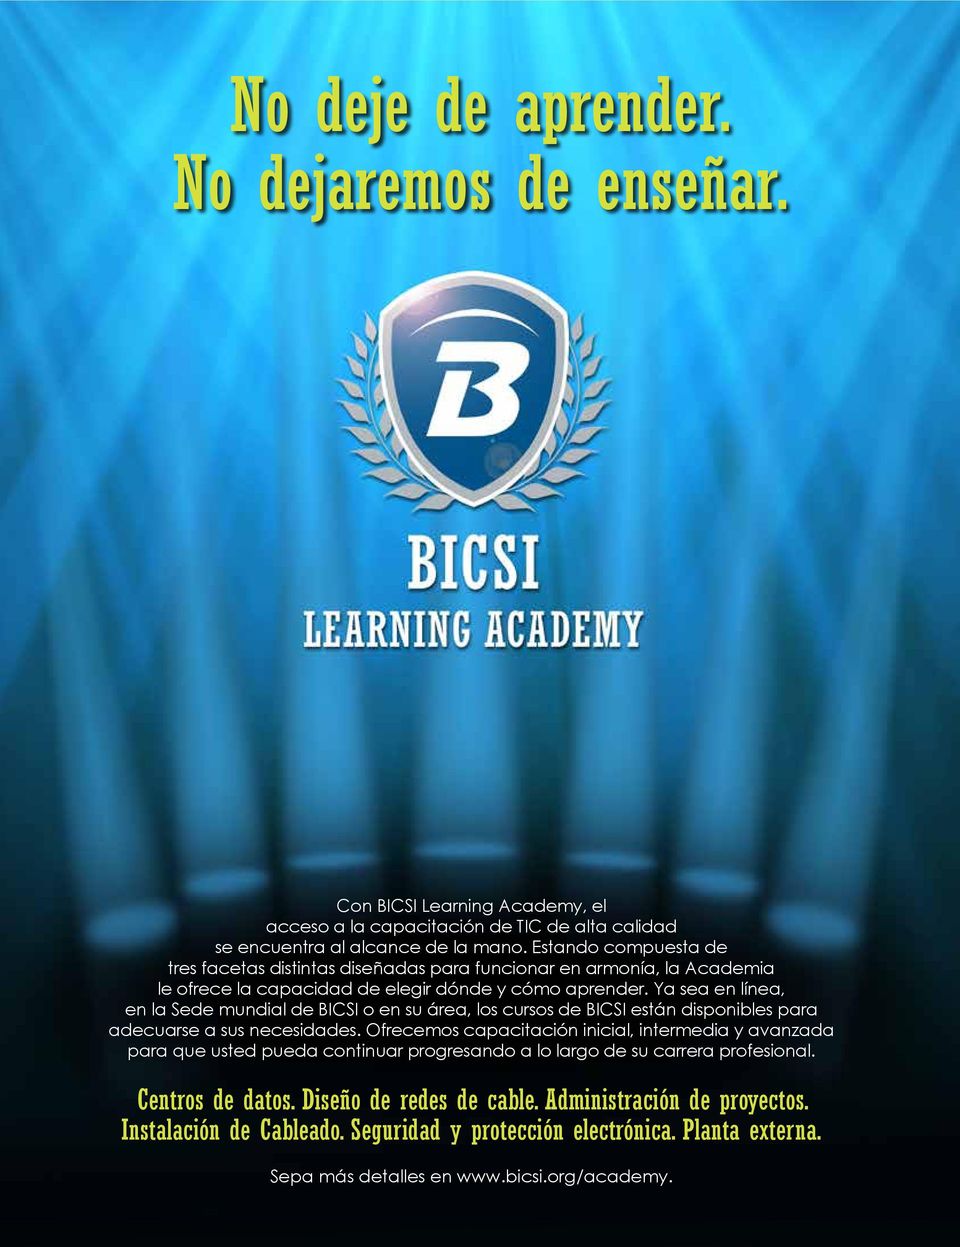 Ya sea en línea, en la Sede mundial de BICSI o en su área, los cursos de BICSI están disponibles para adecuarse a sus necesidades.